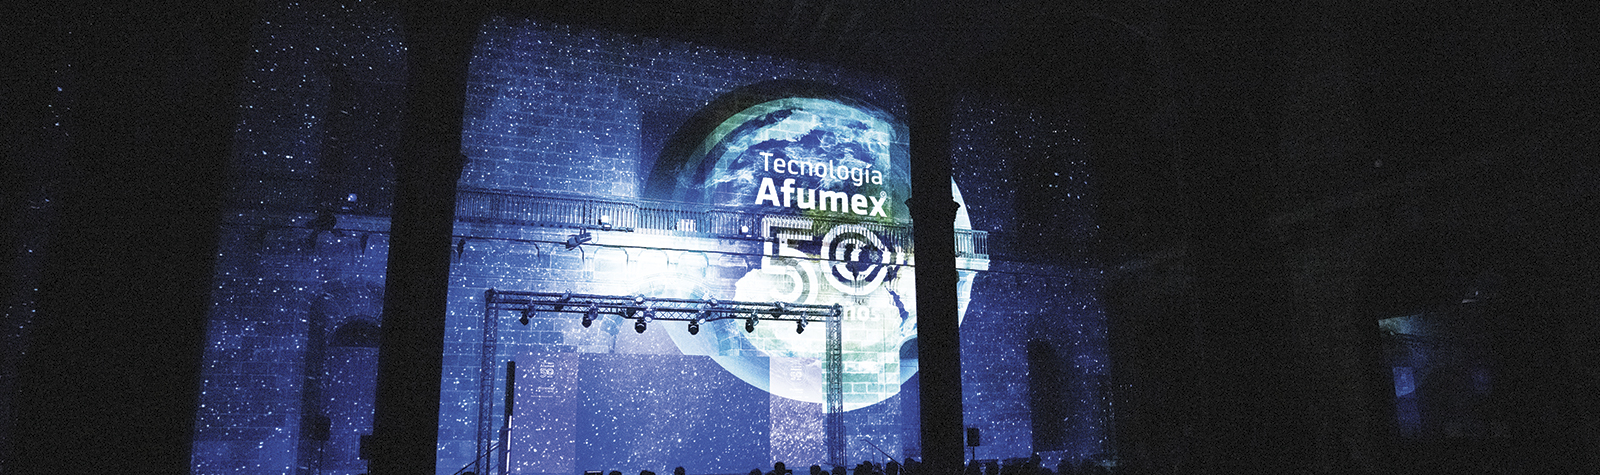 Video mapping de celebración del 50 aniversario de la Tecnología Afumex®